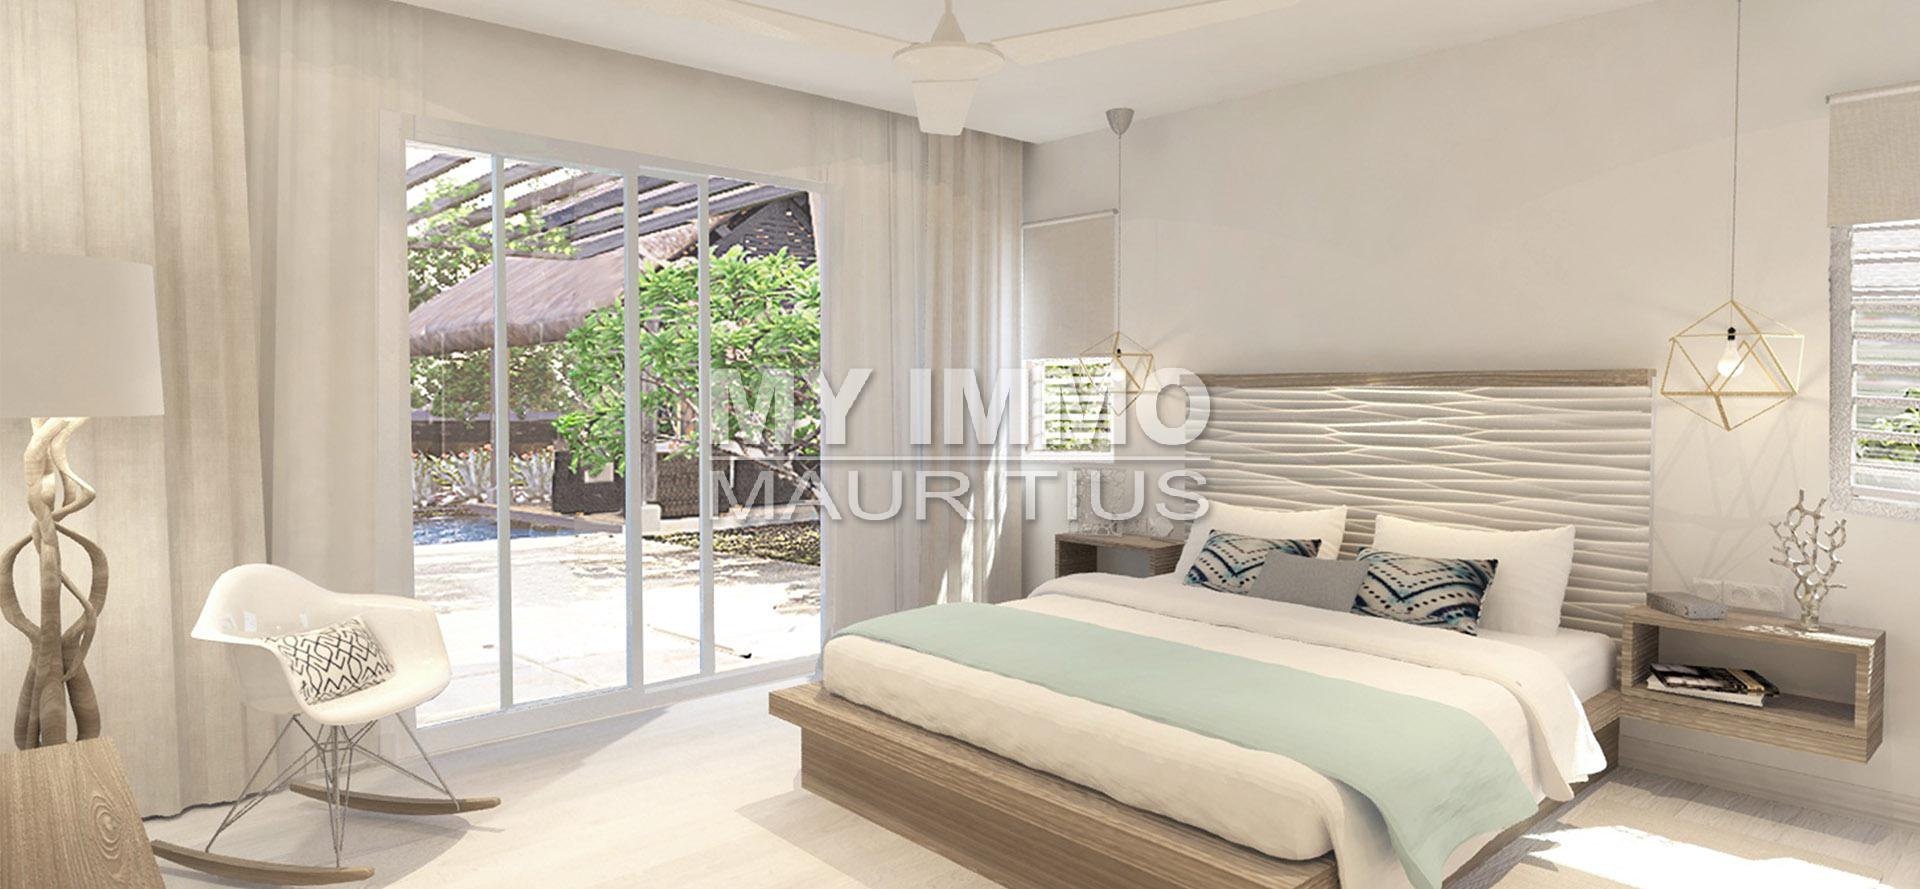 New villa 3 bedrooms en suite